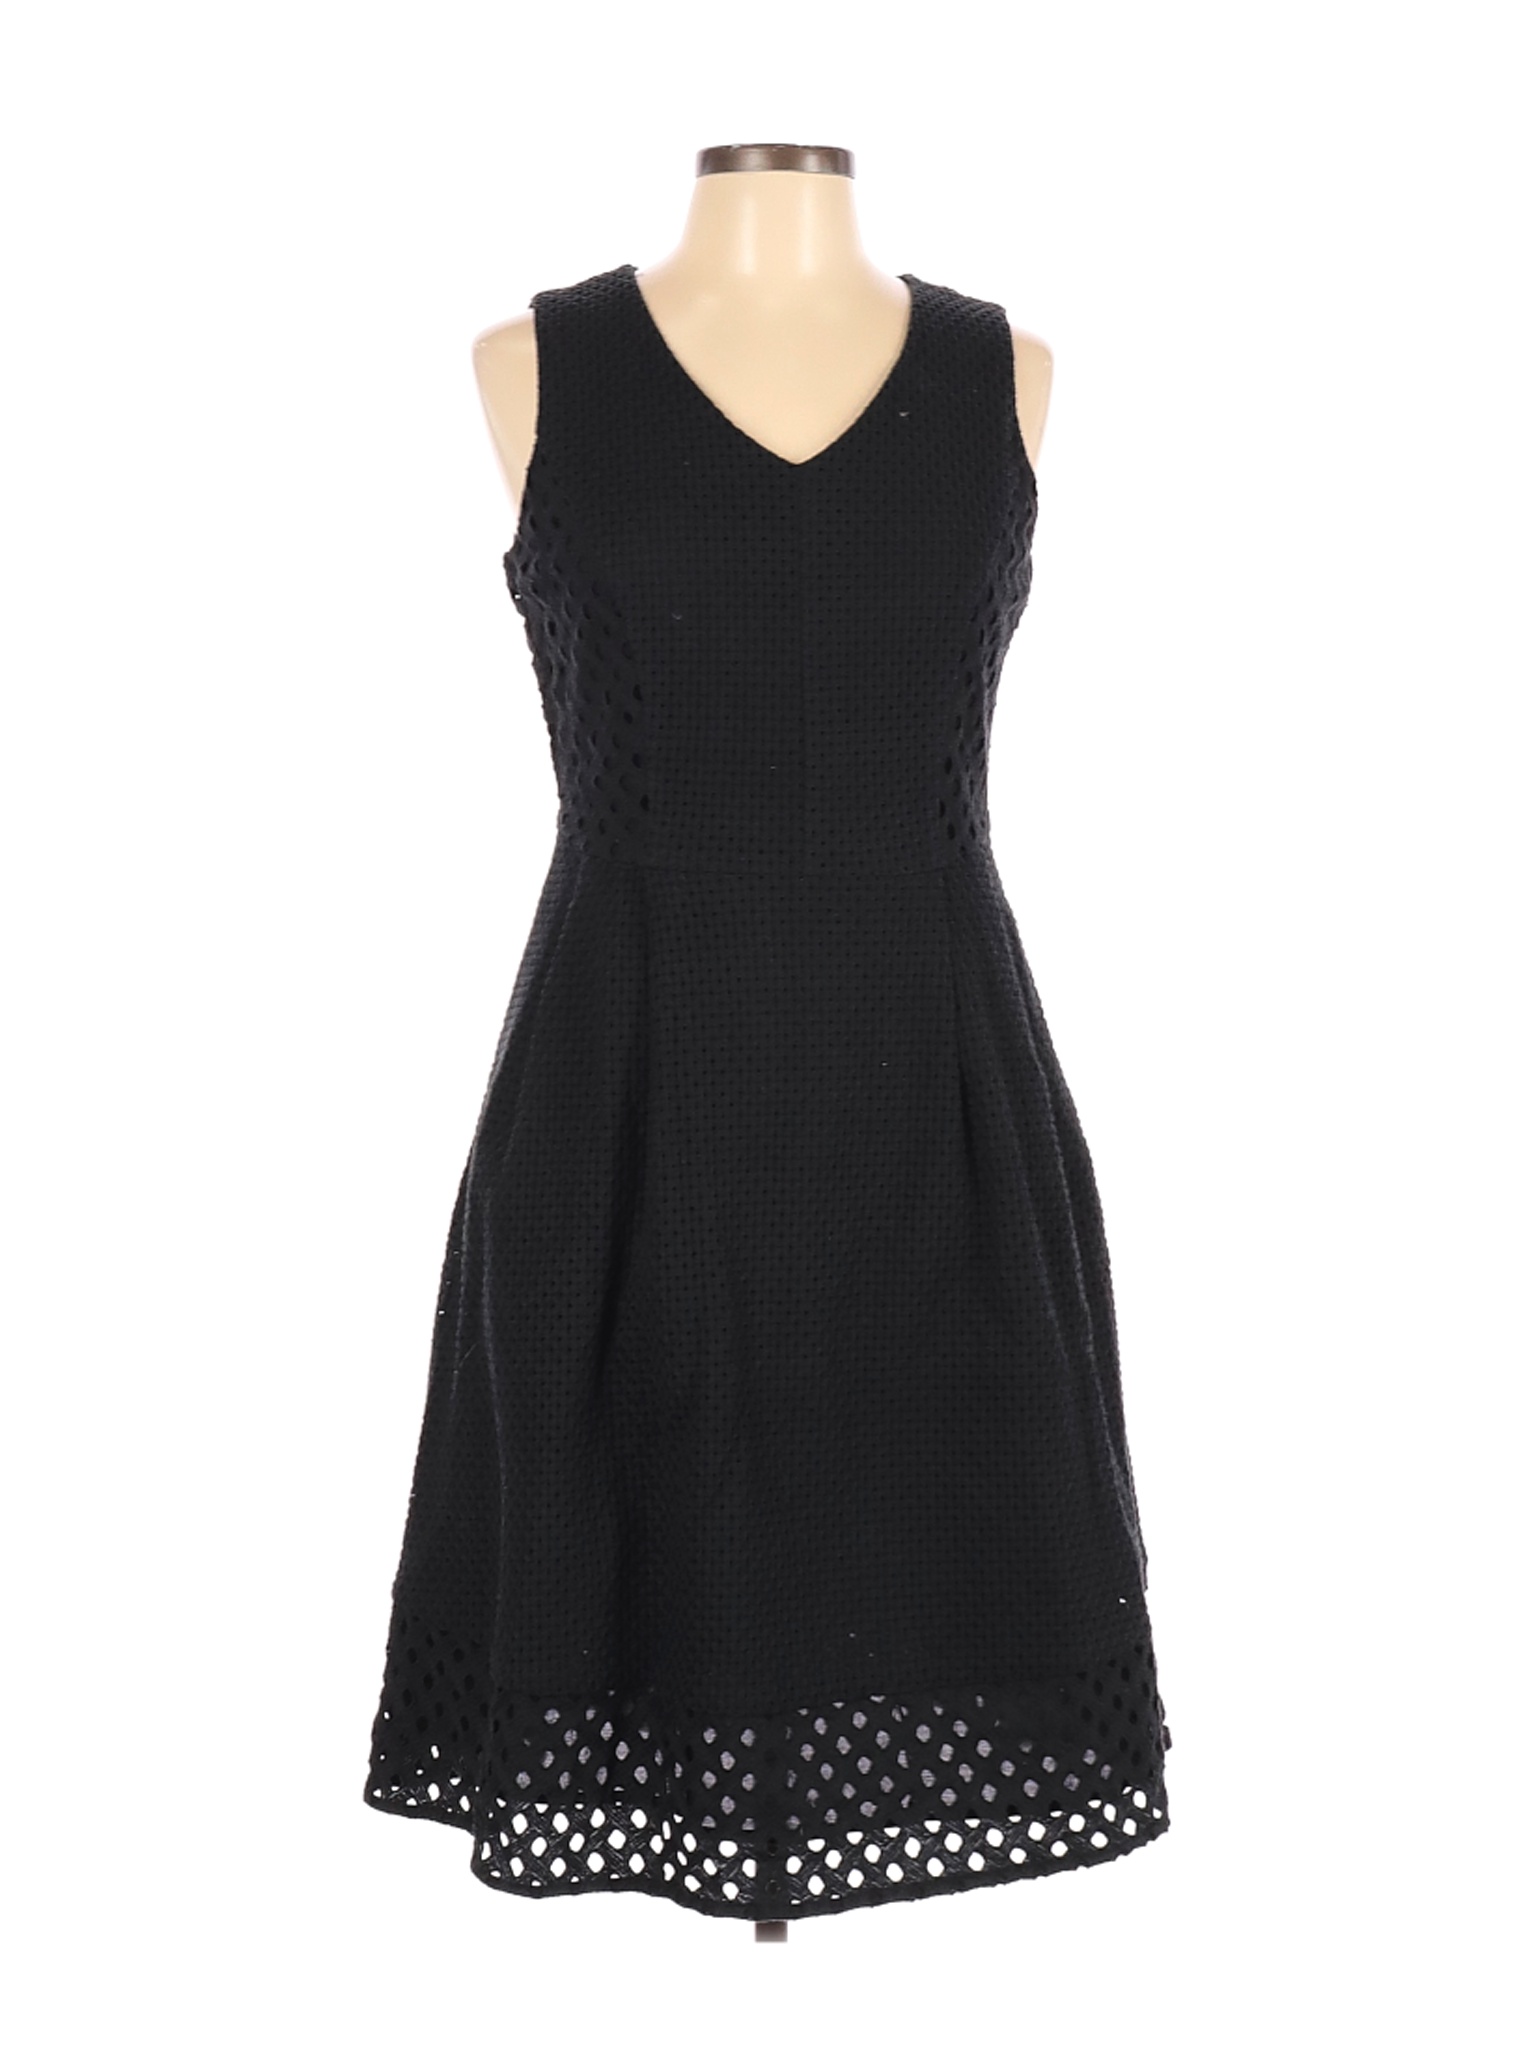 Lands' End Women Black Casual Dress 6 | eBay